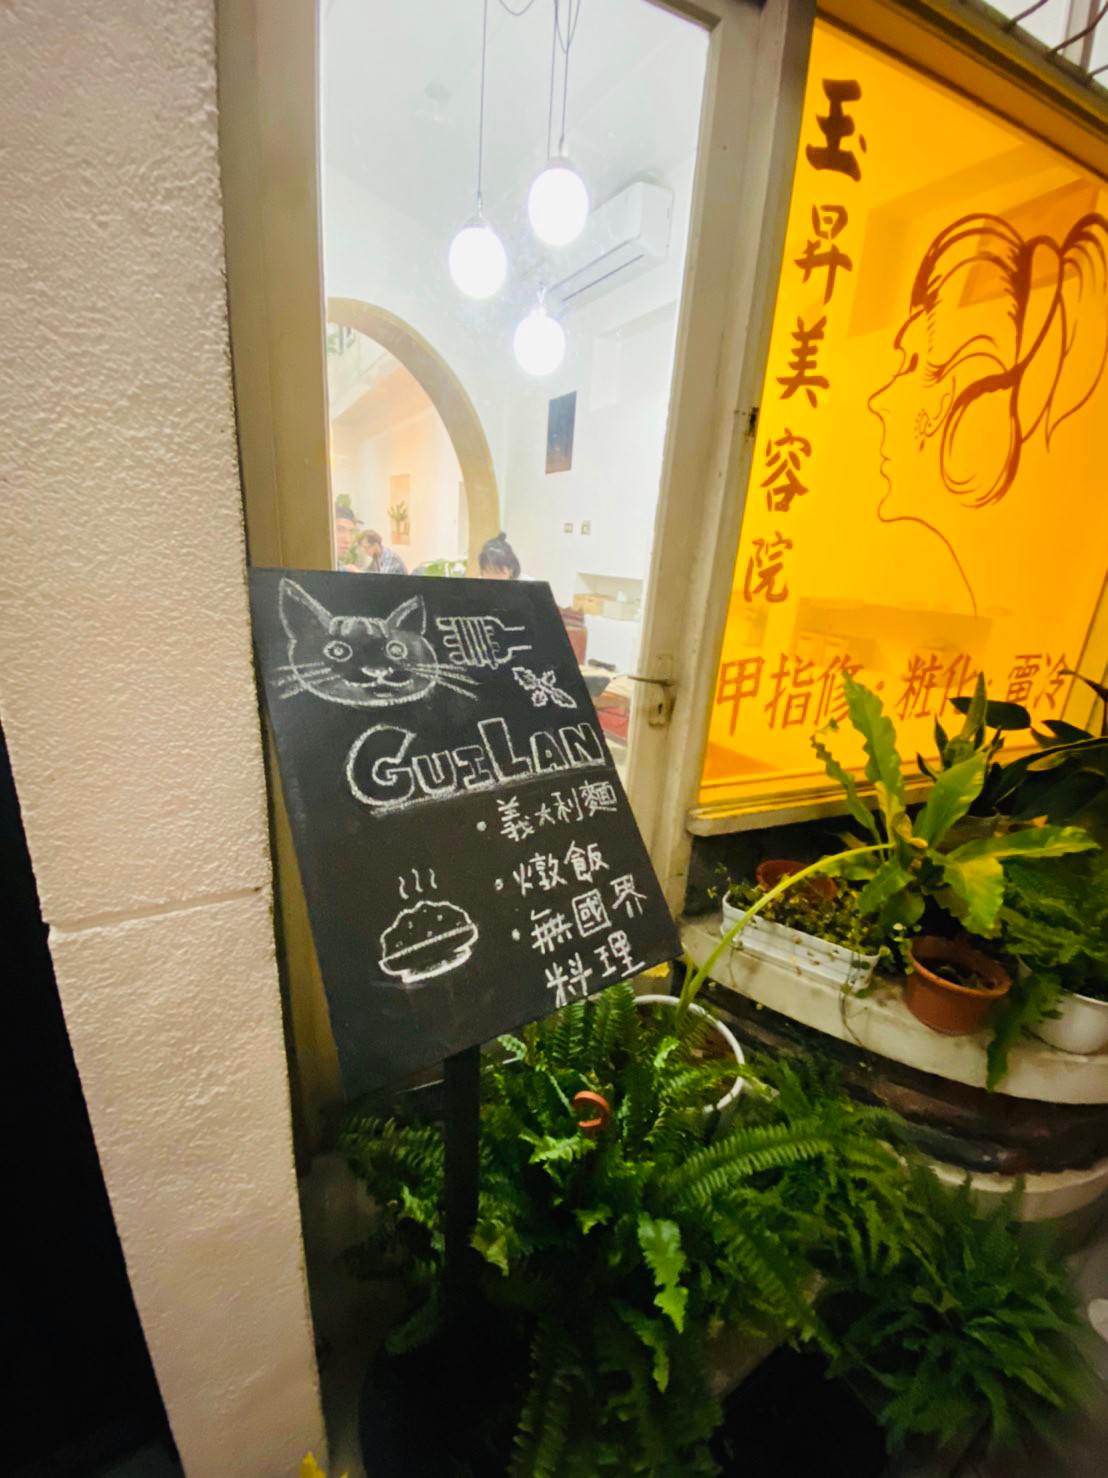 [台南]中西區老屋美食推薦 桂蘭 Guilan巷弄隱藏版美容院原來是餐廳啊 好吃義大利麵燉飯內有店貓 貓奴請進